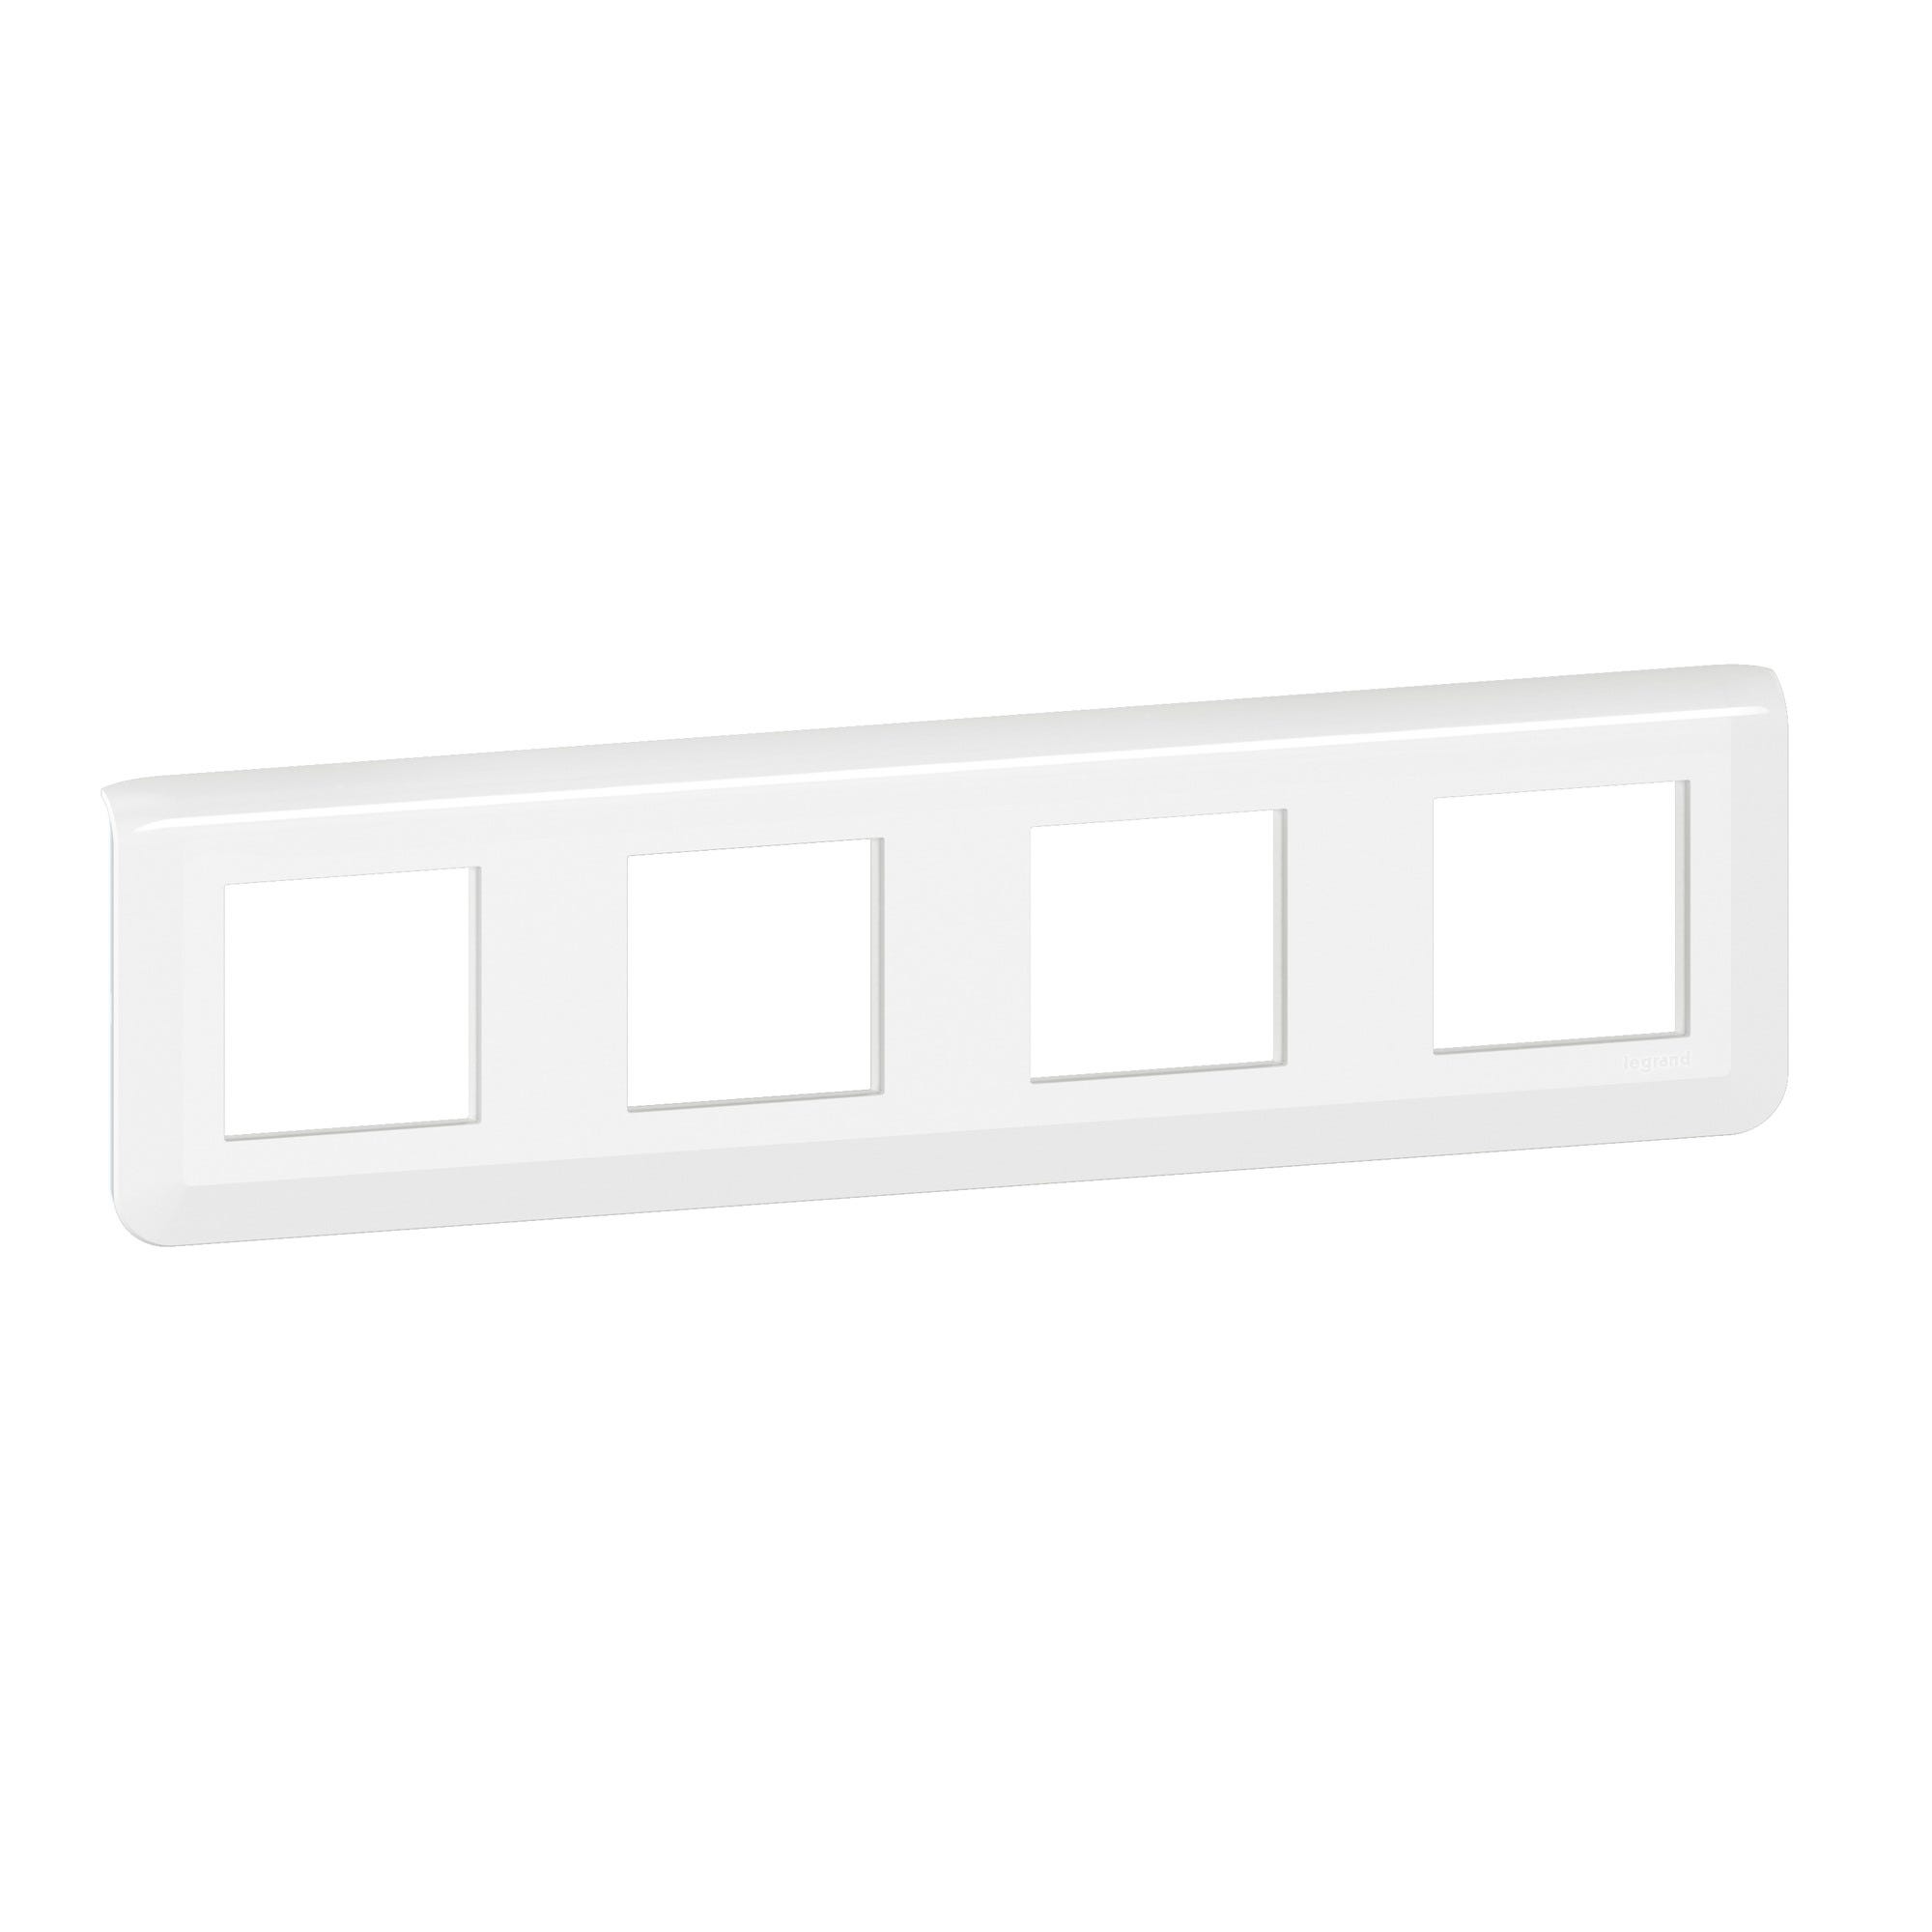 Plaque de finition horizontale Mosaic pour 4x2 modules blanc - LEGRAND 0